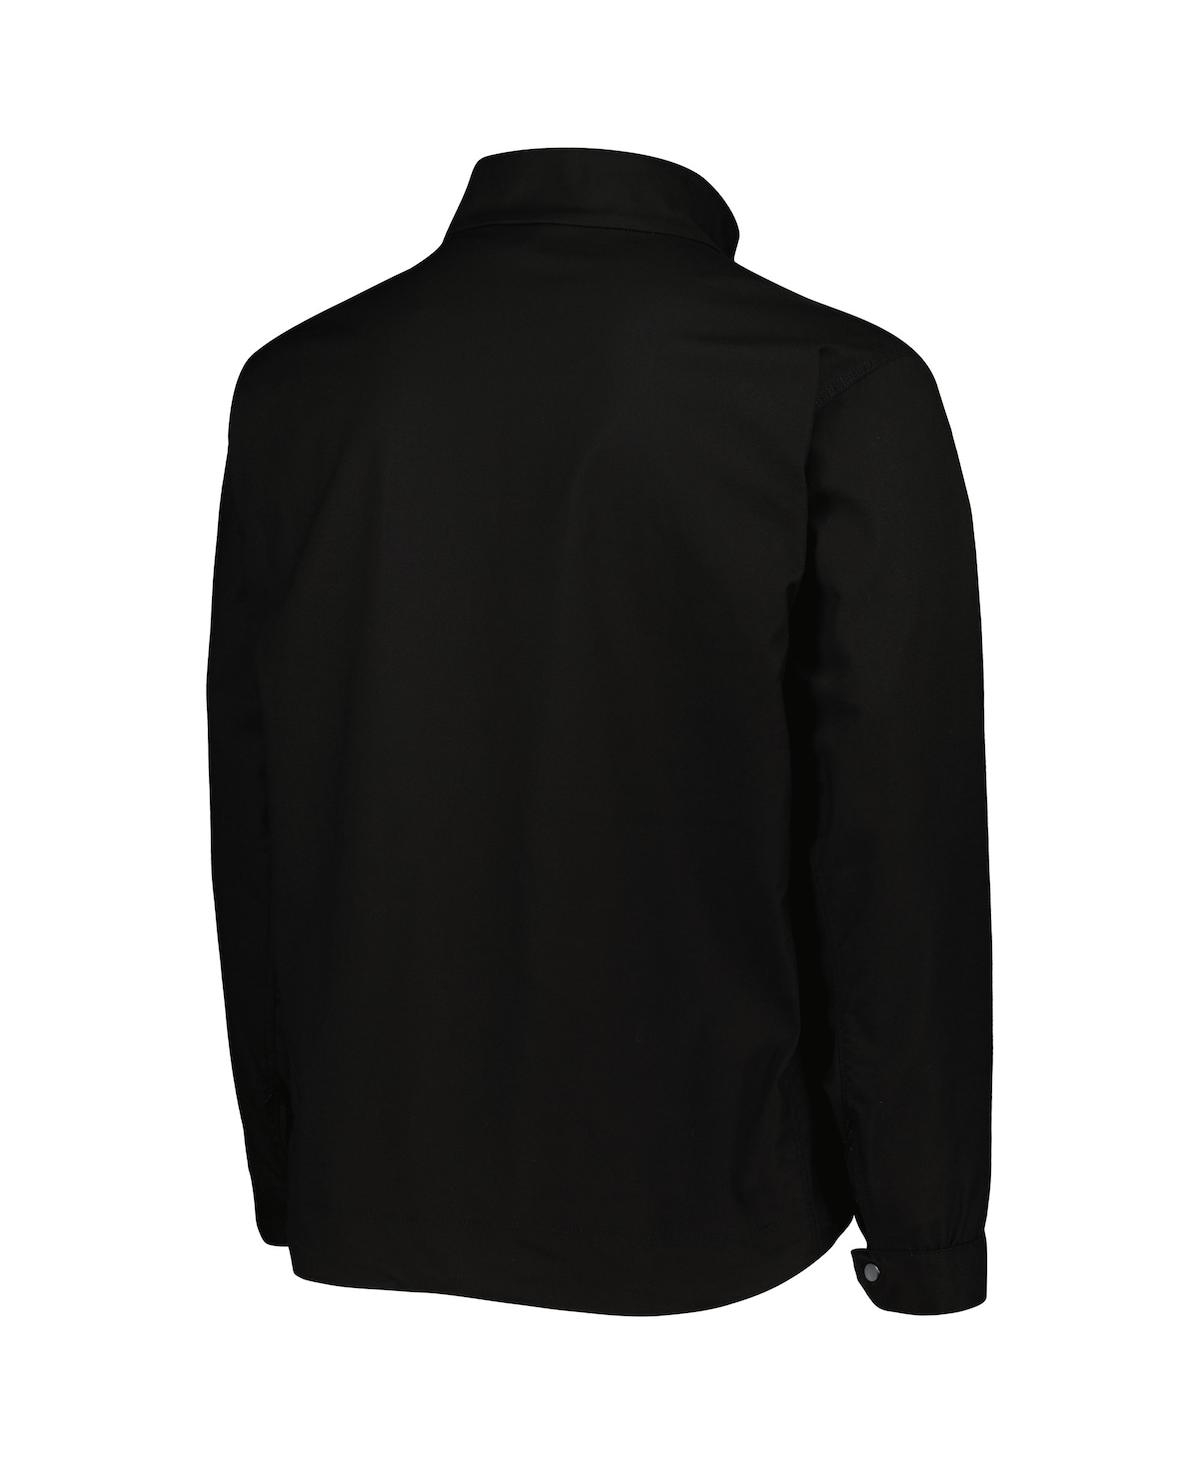 Shop Dunbrooke Men's  Black Chicago White Sox Journey Tri-blend Full-zip Jacket